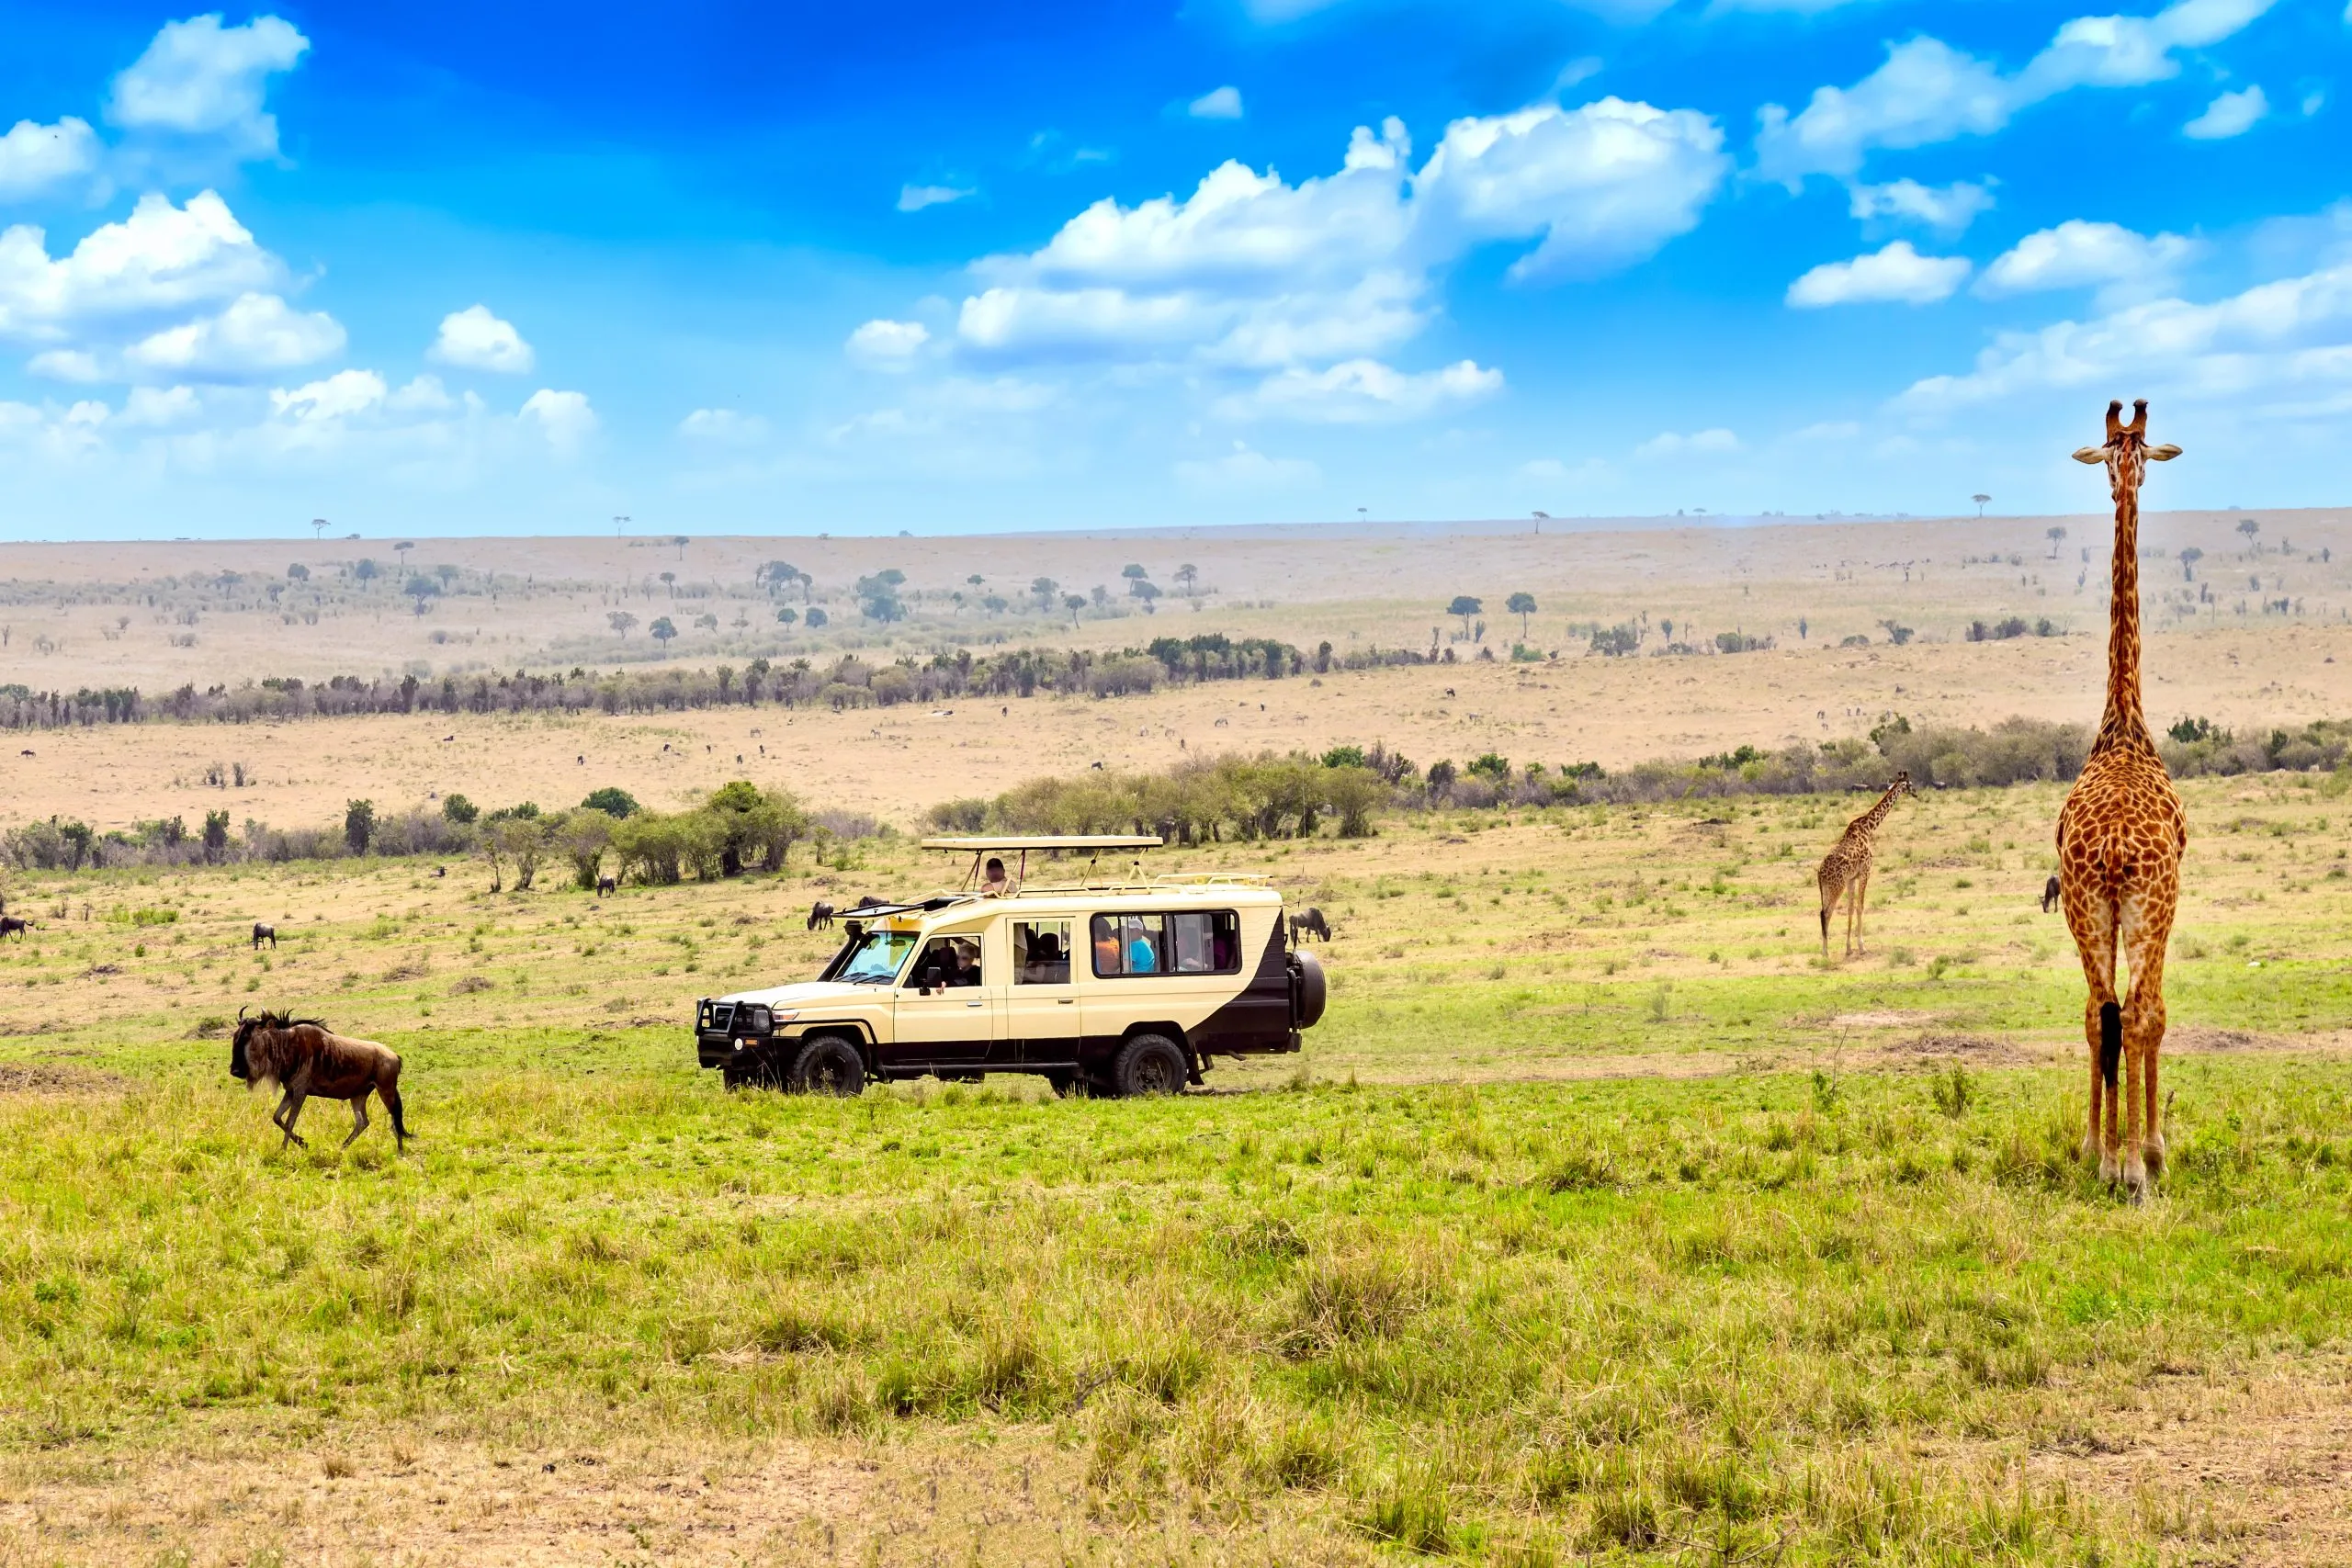 Jirafa salvaje y ñu cerca de coche de safari en el Parque Nacional Masai Mara, Kenia. Concepto de safari. Paisaje de viaje africano